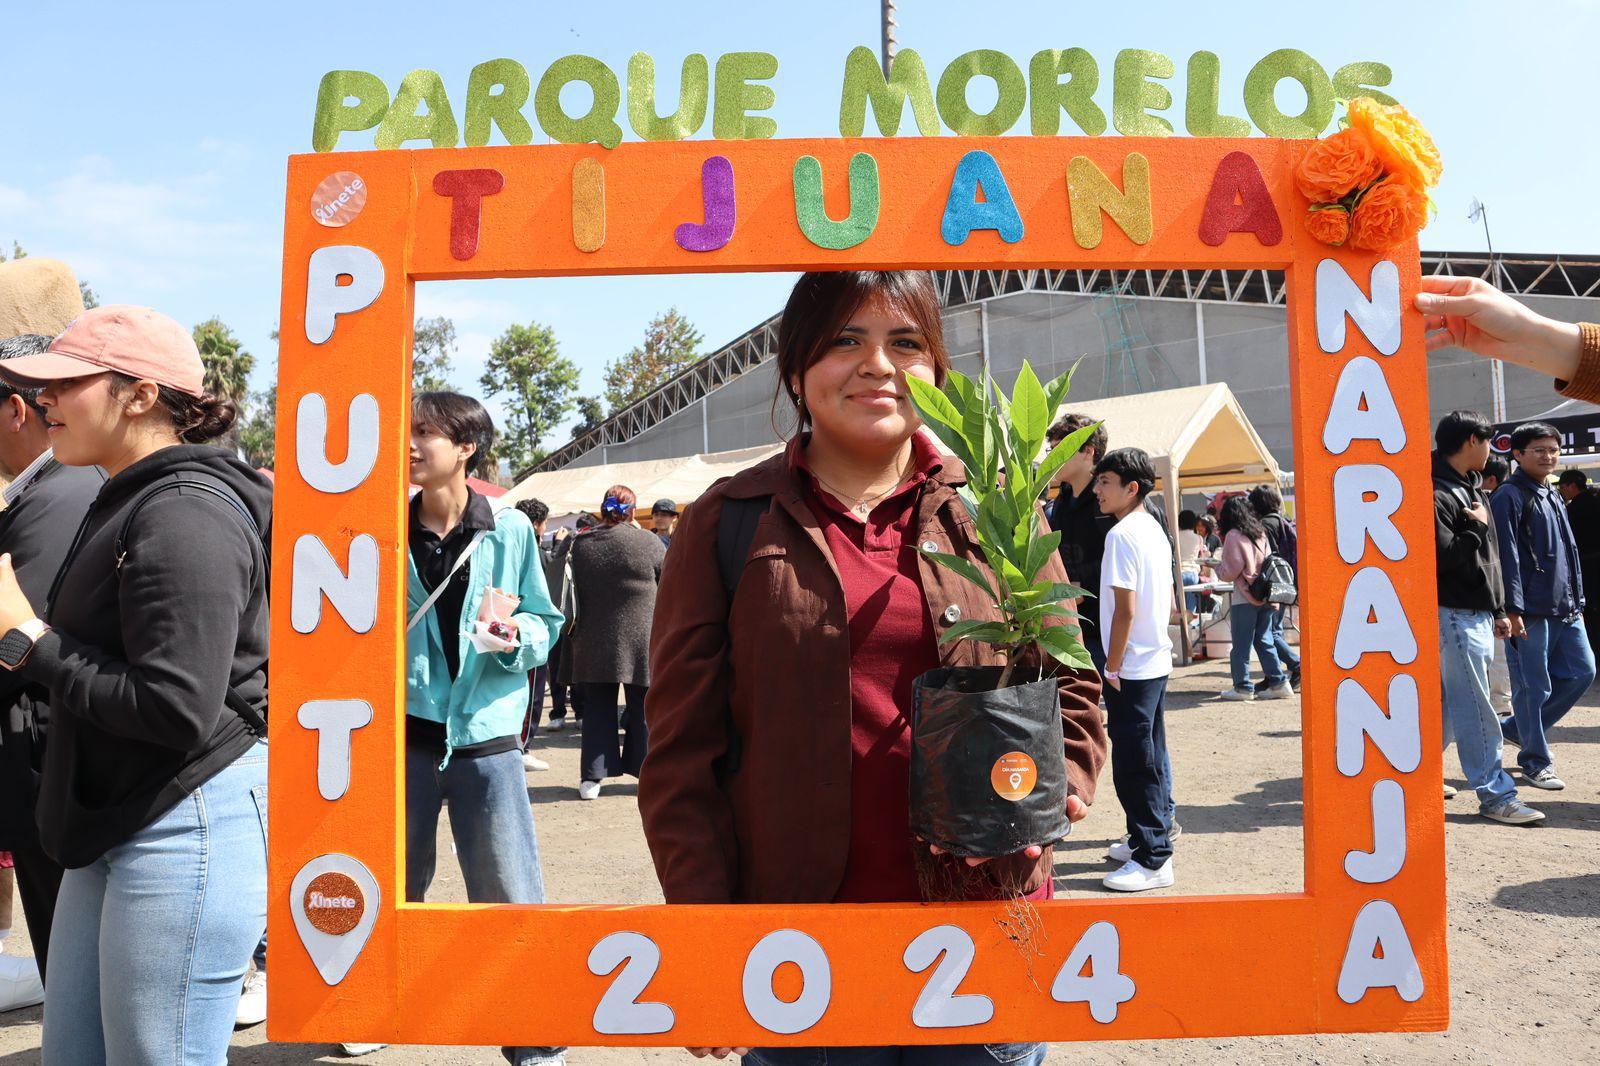 Parque Morelos promueve la iniciativa “Unete” contra la violencia de género